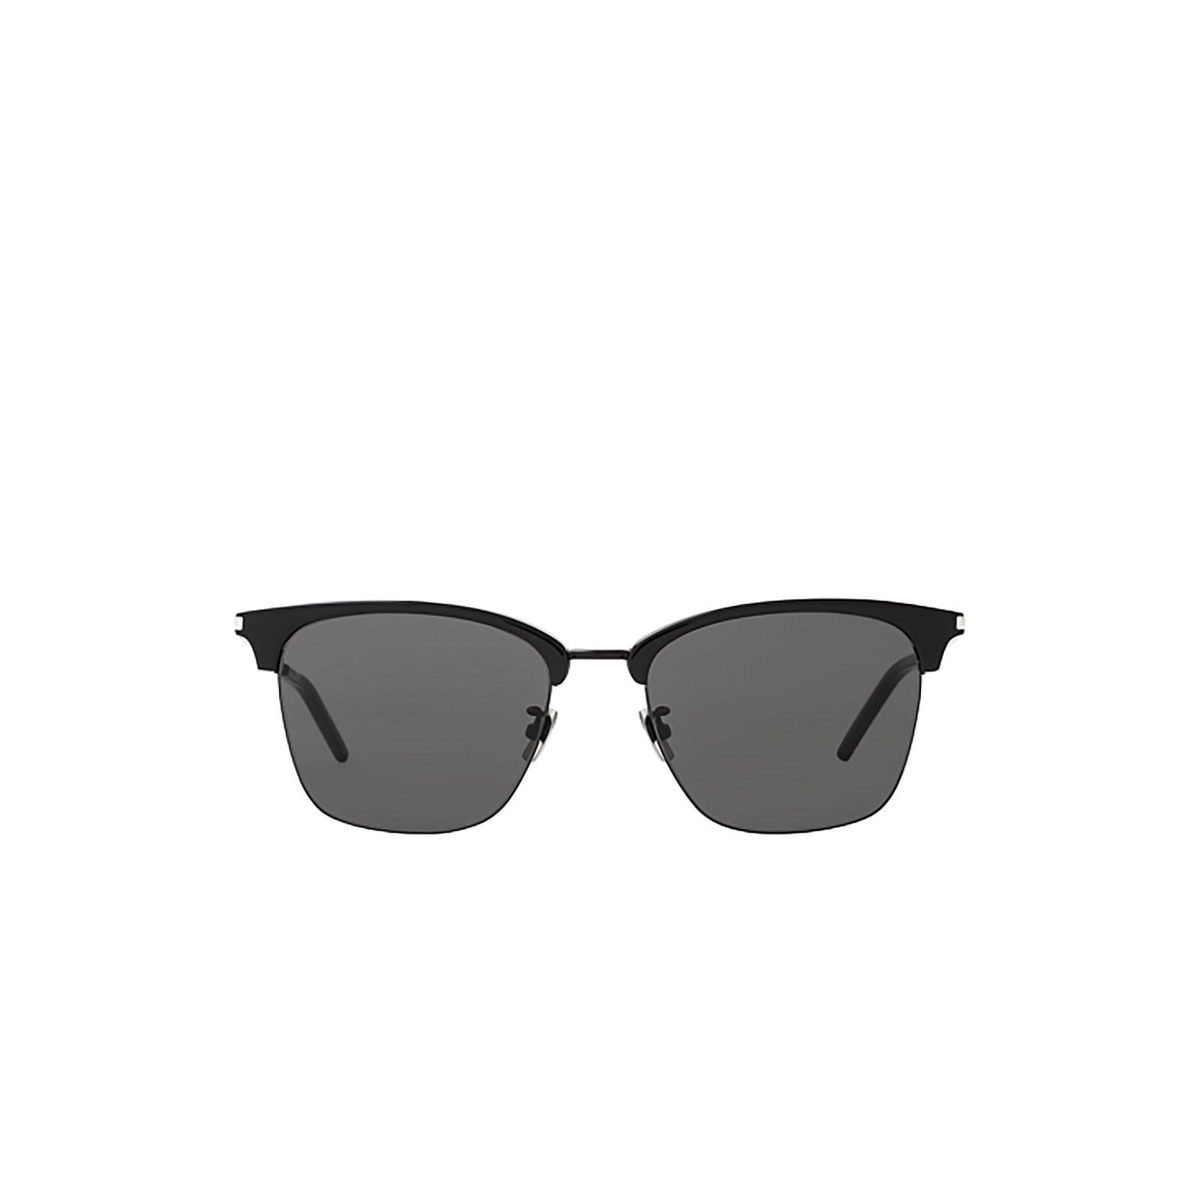 Saint Laurent® Square Sunglasses: SL 340 color Black 001 - 1/2.